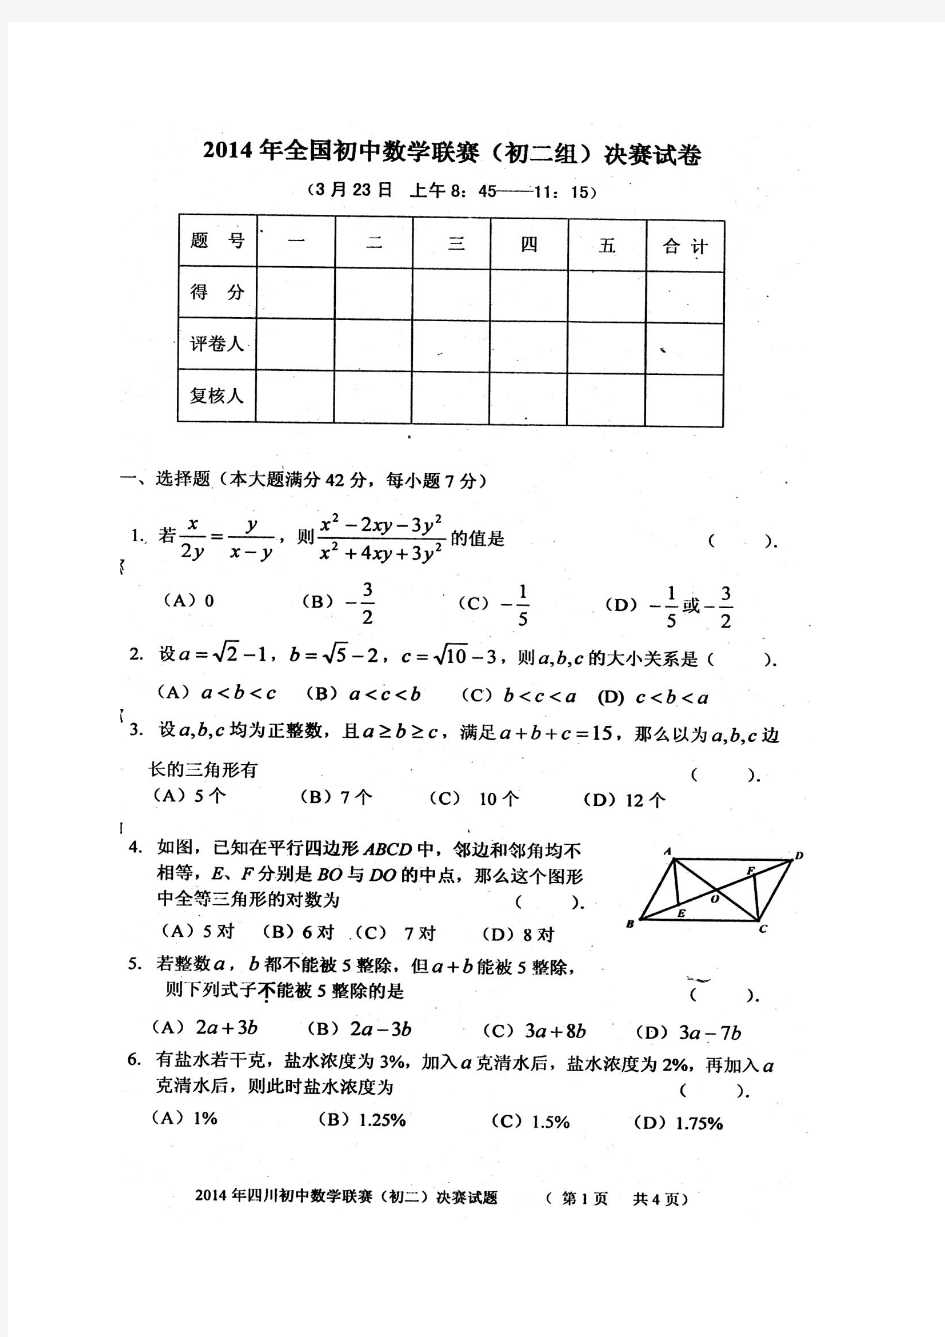 四川省2014年全国初中数学竞赛(初二组)决赛试卷及参考答案